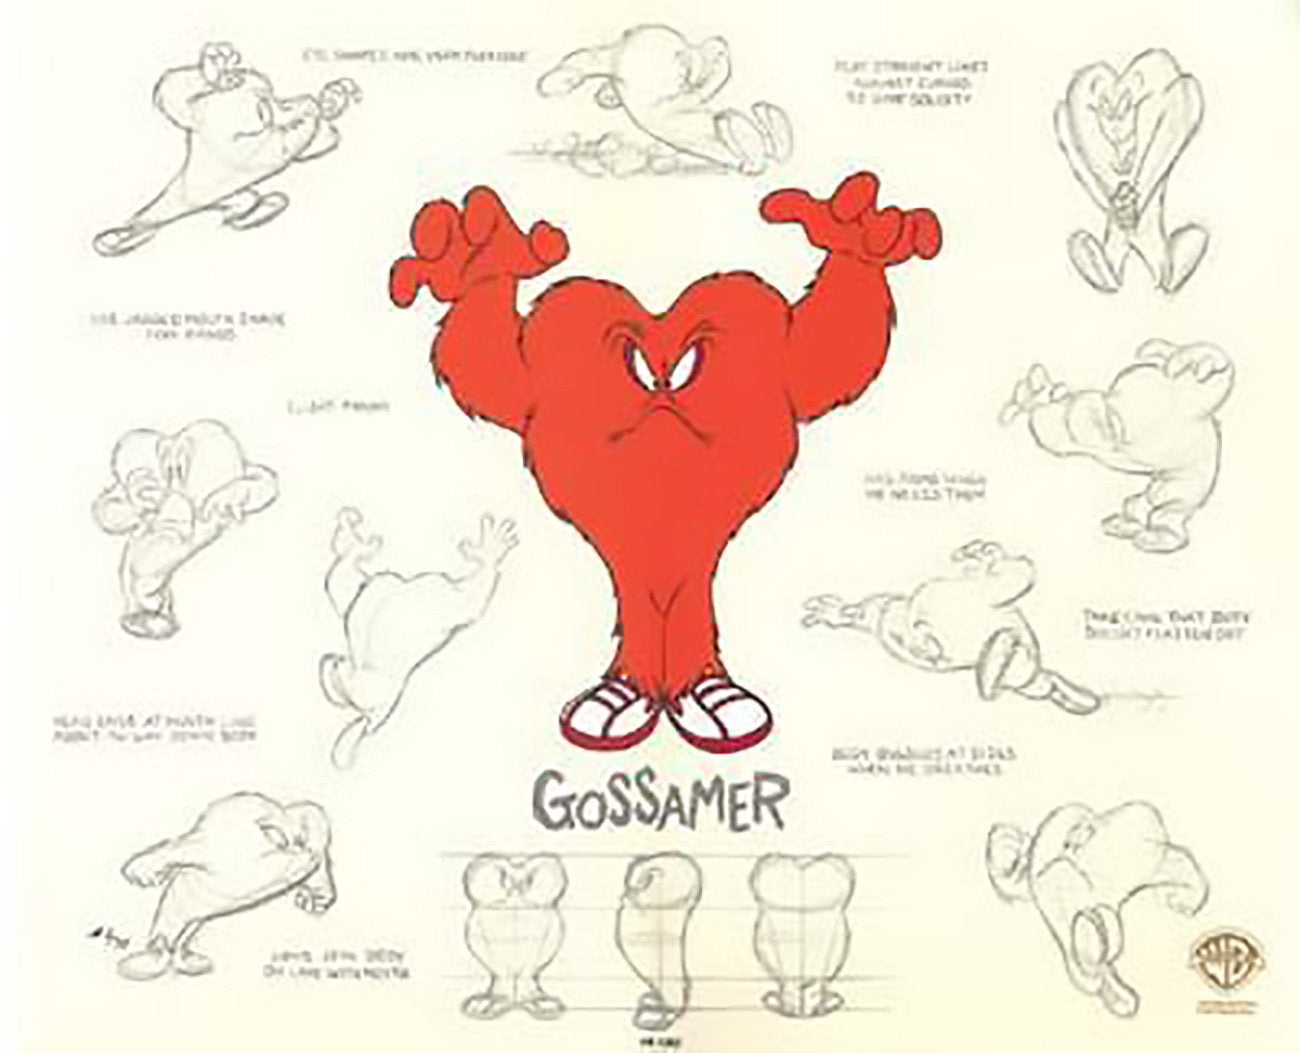 Gossamer Model Sheet Warner Brothers Limited Edition Animation Cel of 750